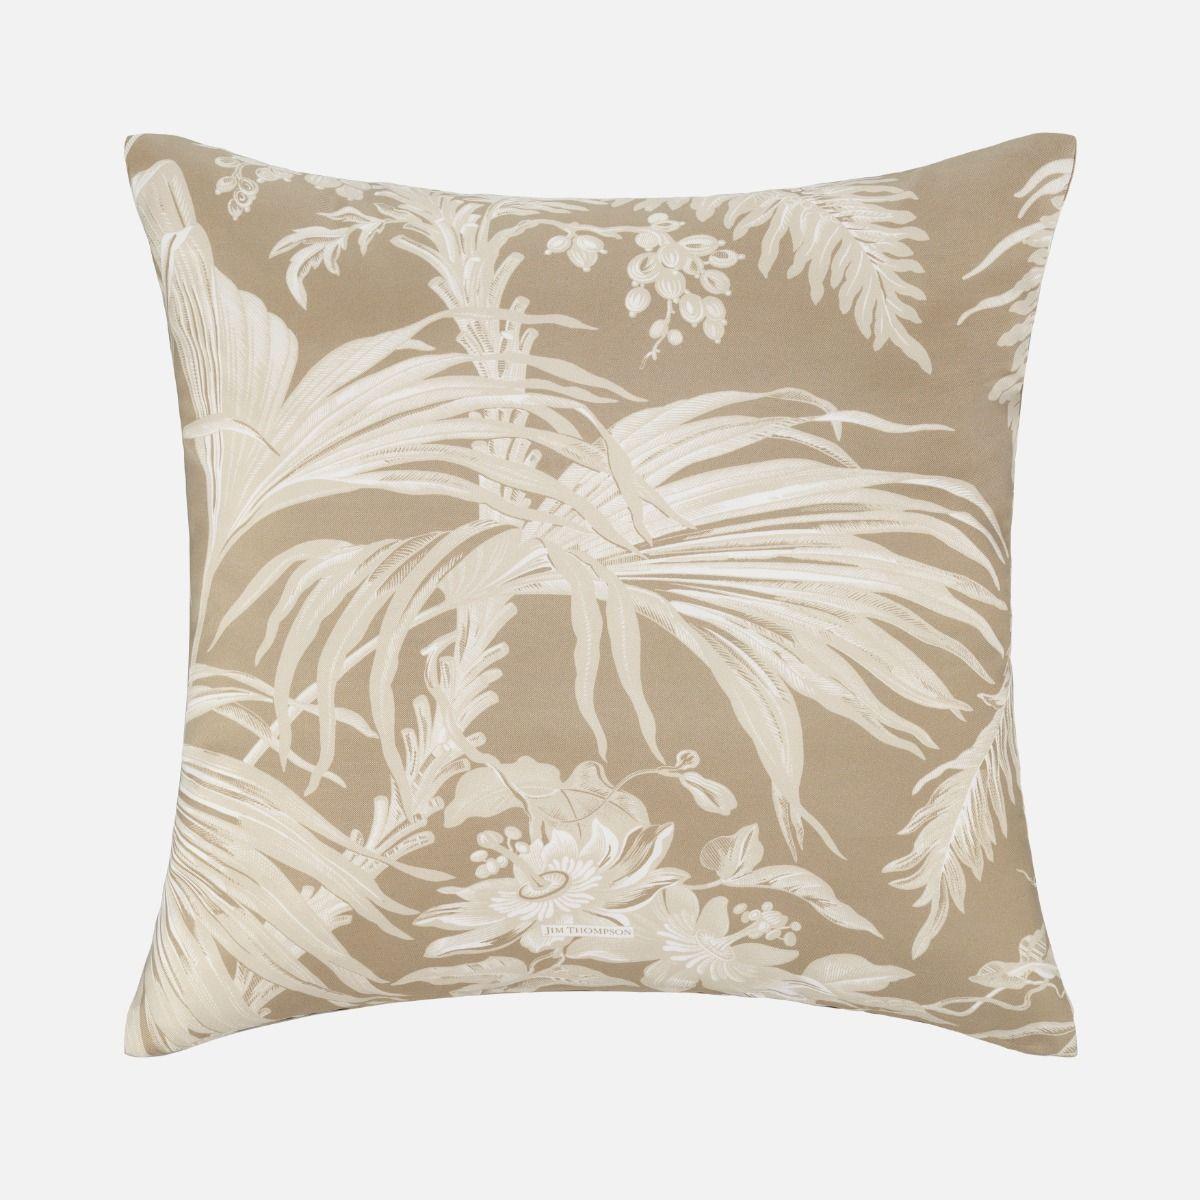 Palm Jungle Silk Cushion Cover 18" - Brown